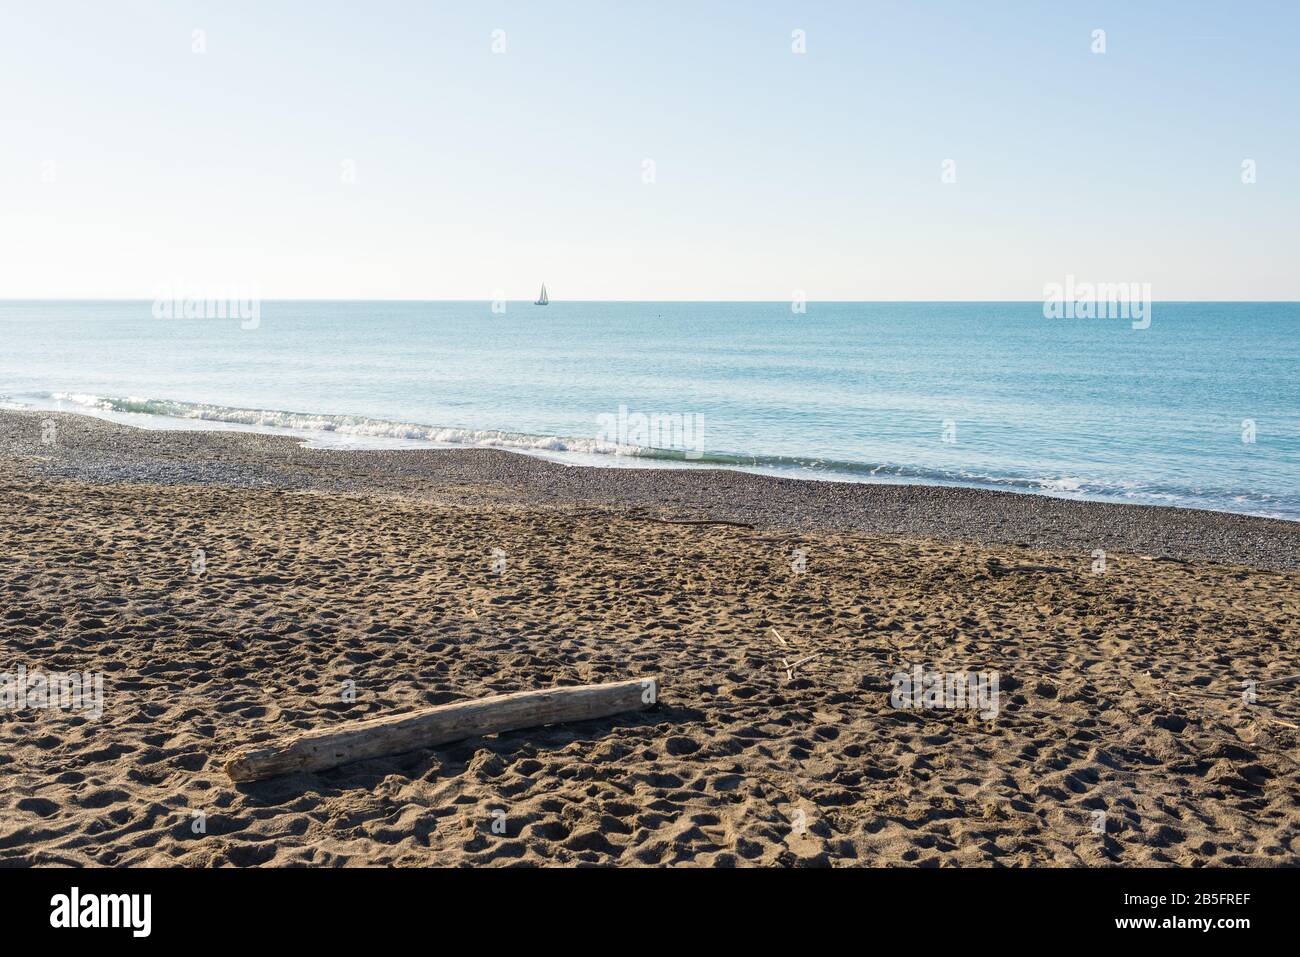 Invierno escena costera en la Toscana con troncos de madera en la playa de arena, el tiempo soleado y el mar tranquilo Foto de stock